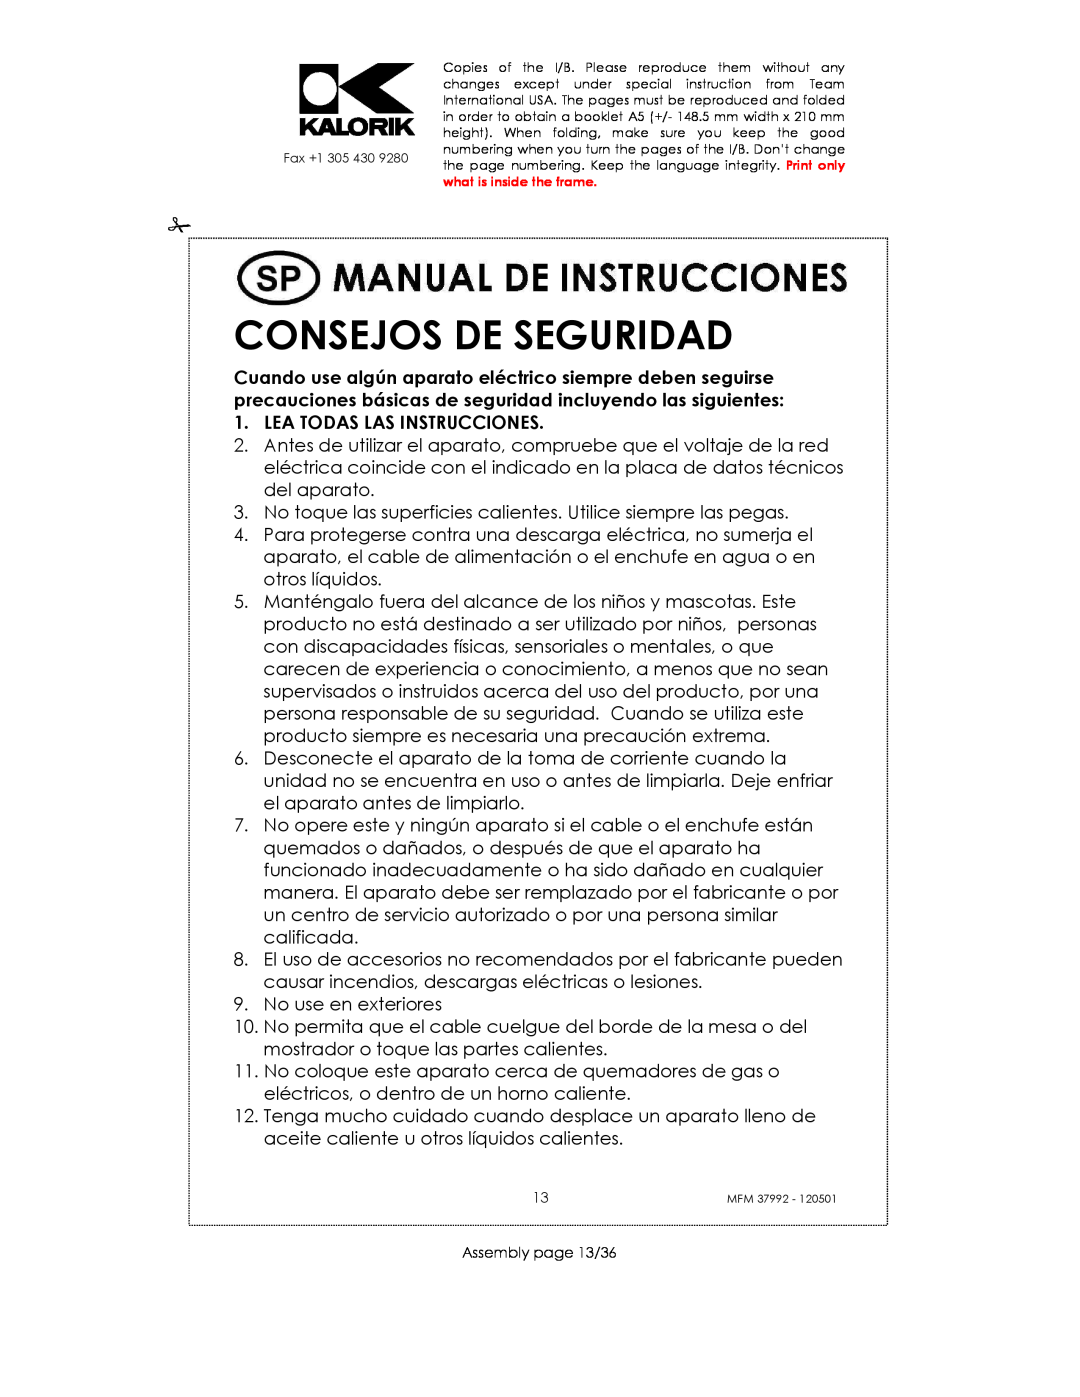 Kalorik MFM 37992 manual Consejos De Seguridad, Lea Todas Las Instrucciones 